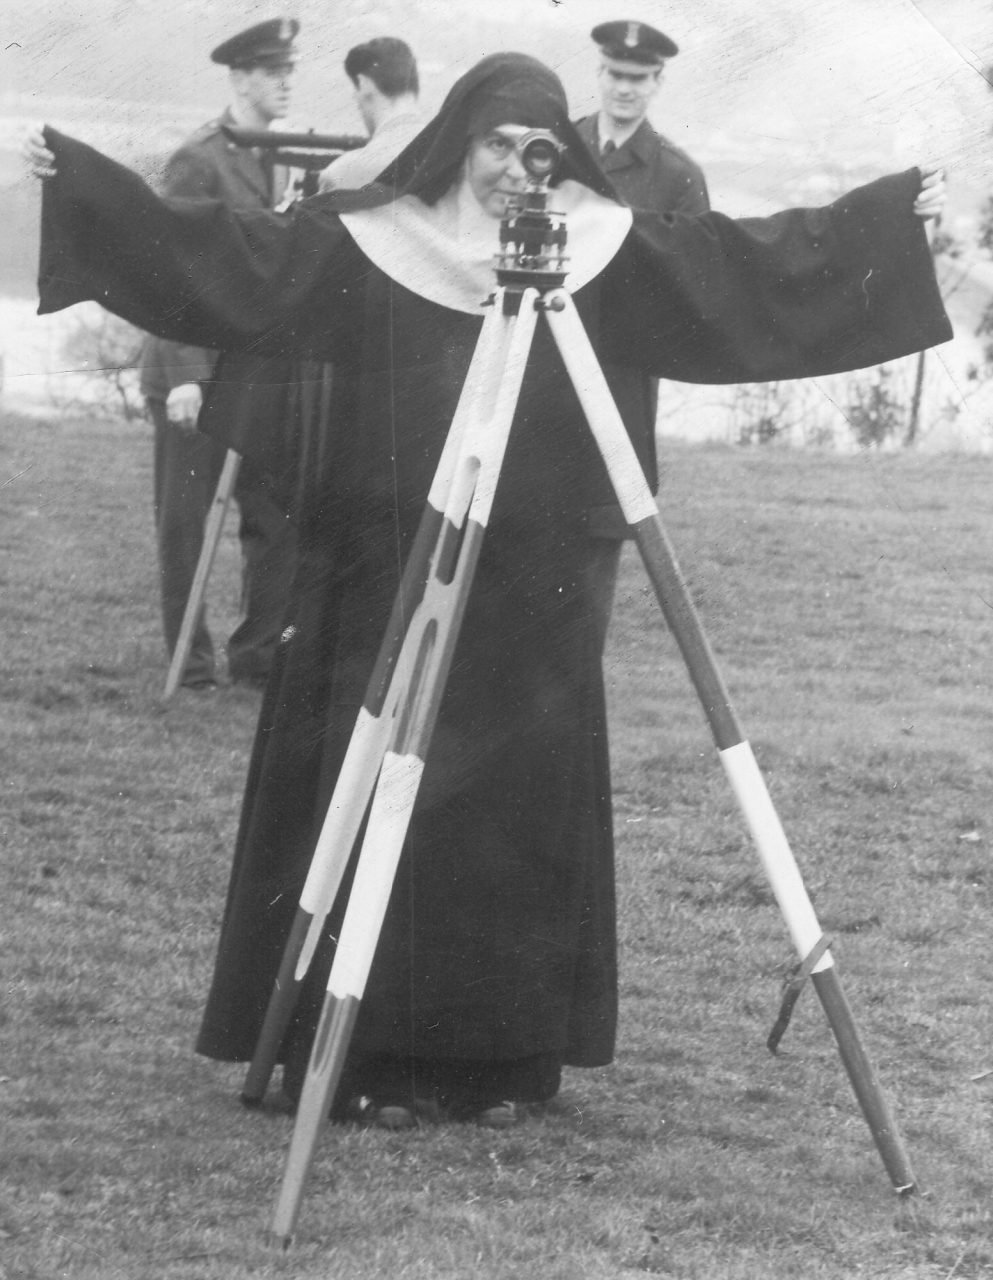 Nun in black habit using surveying equipment